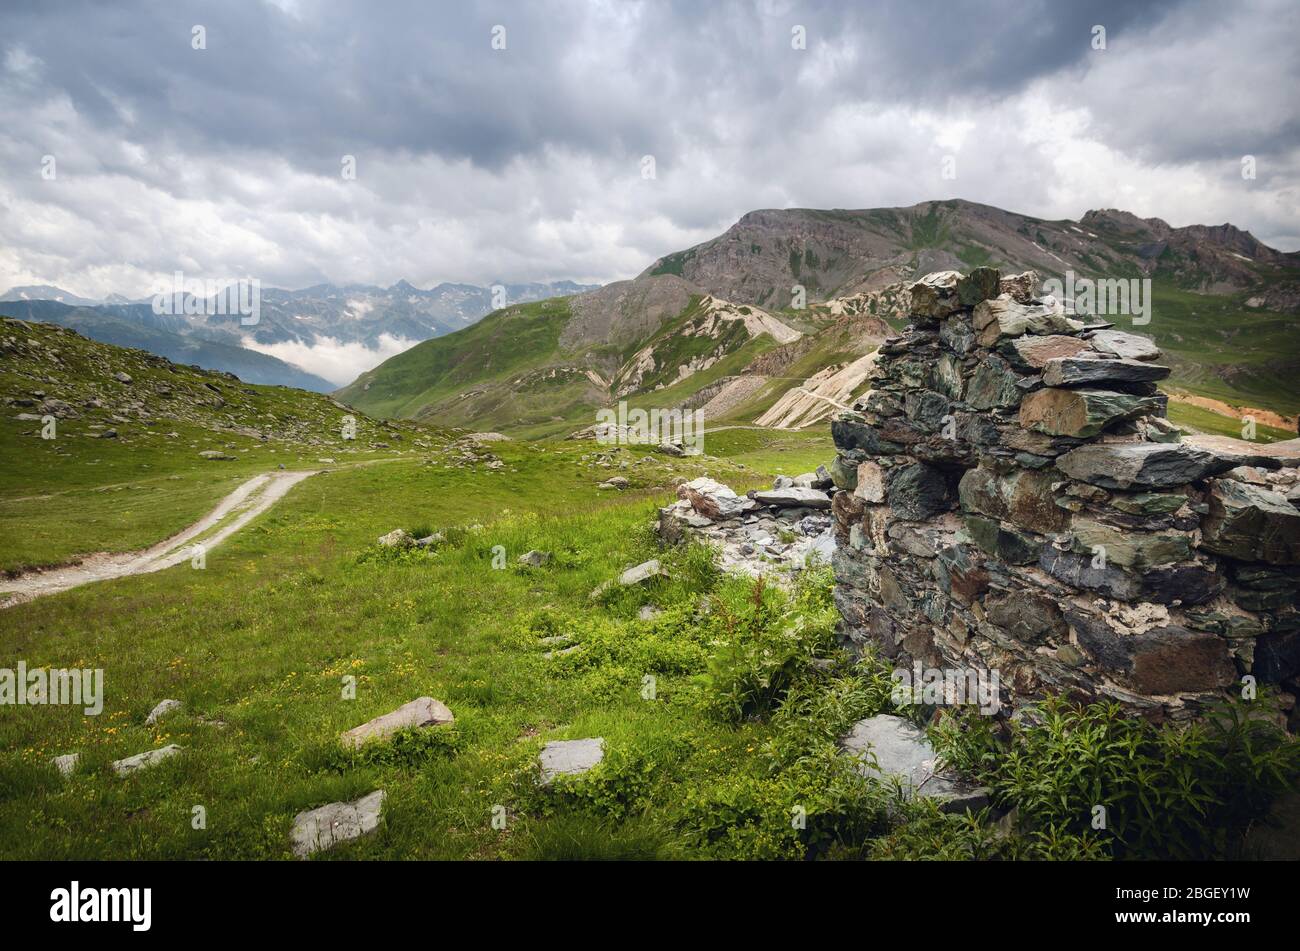 Antiche caserme militari ruderi della prima guerra mondiale sul sentiero per Rocca la Meja, una delle vette più importanti delle Alpi piemontesi, Italia Foto Stock